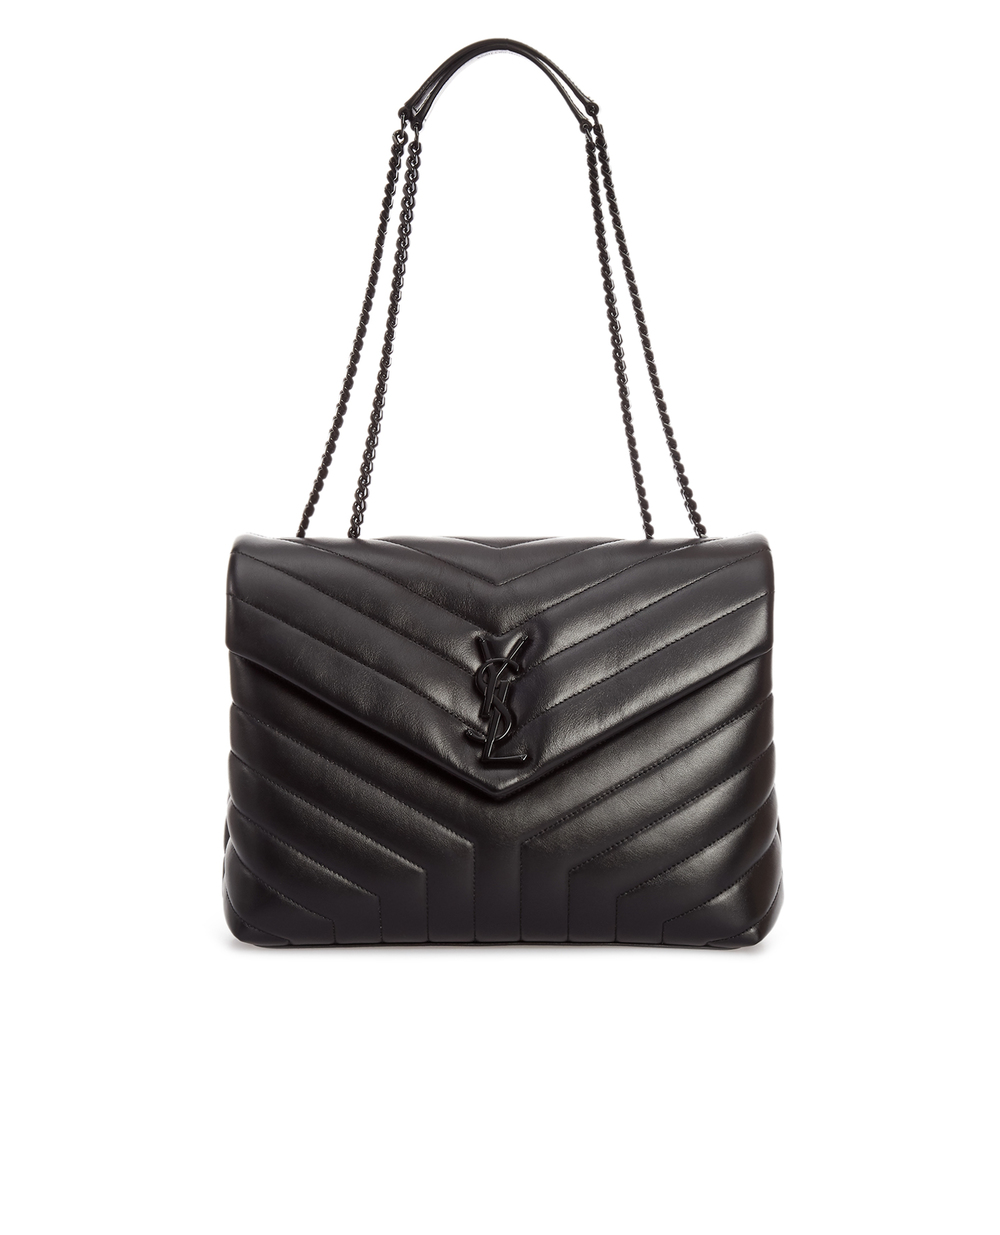 Кожаная сумка Loulou Medium Saint Laurent 574946-DV728, черный цвет • Купить в интернет-магазине Kameron